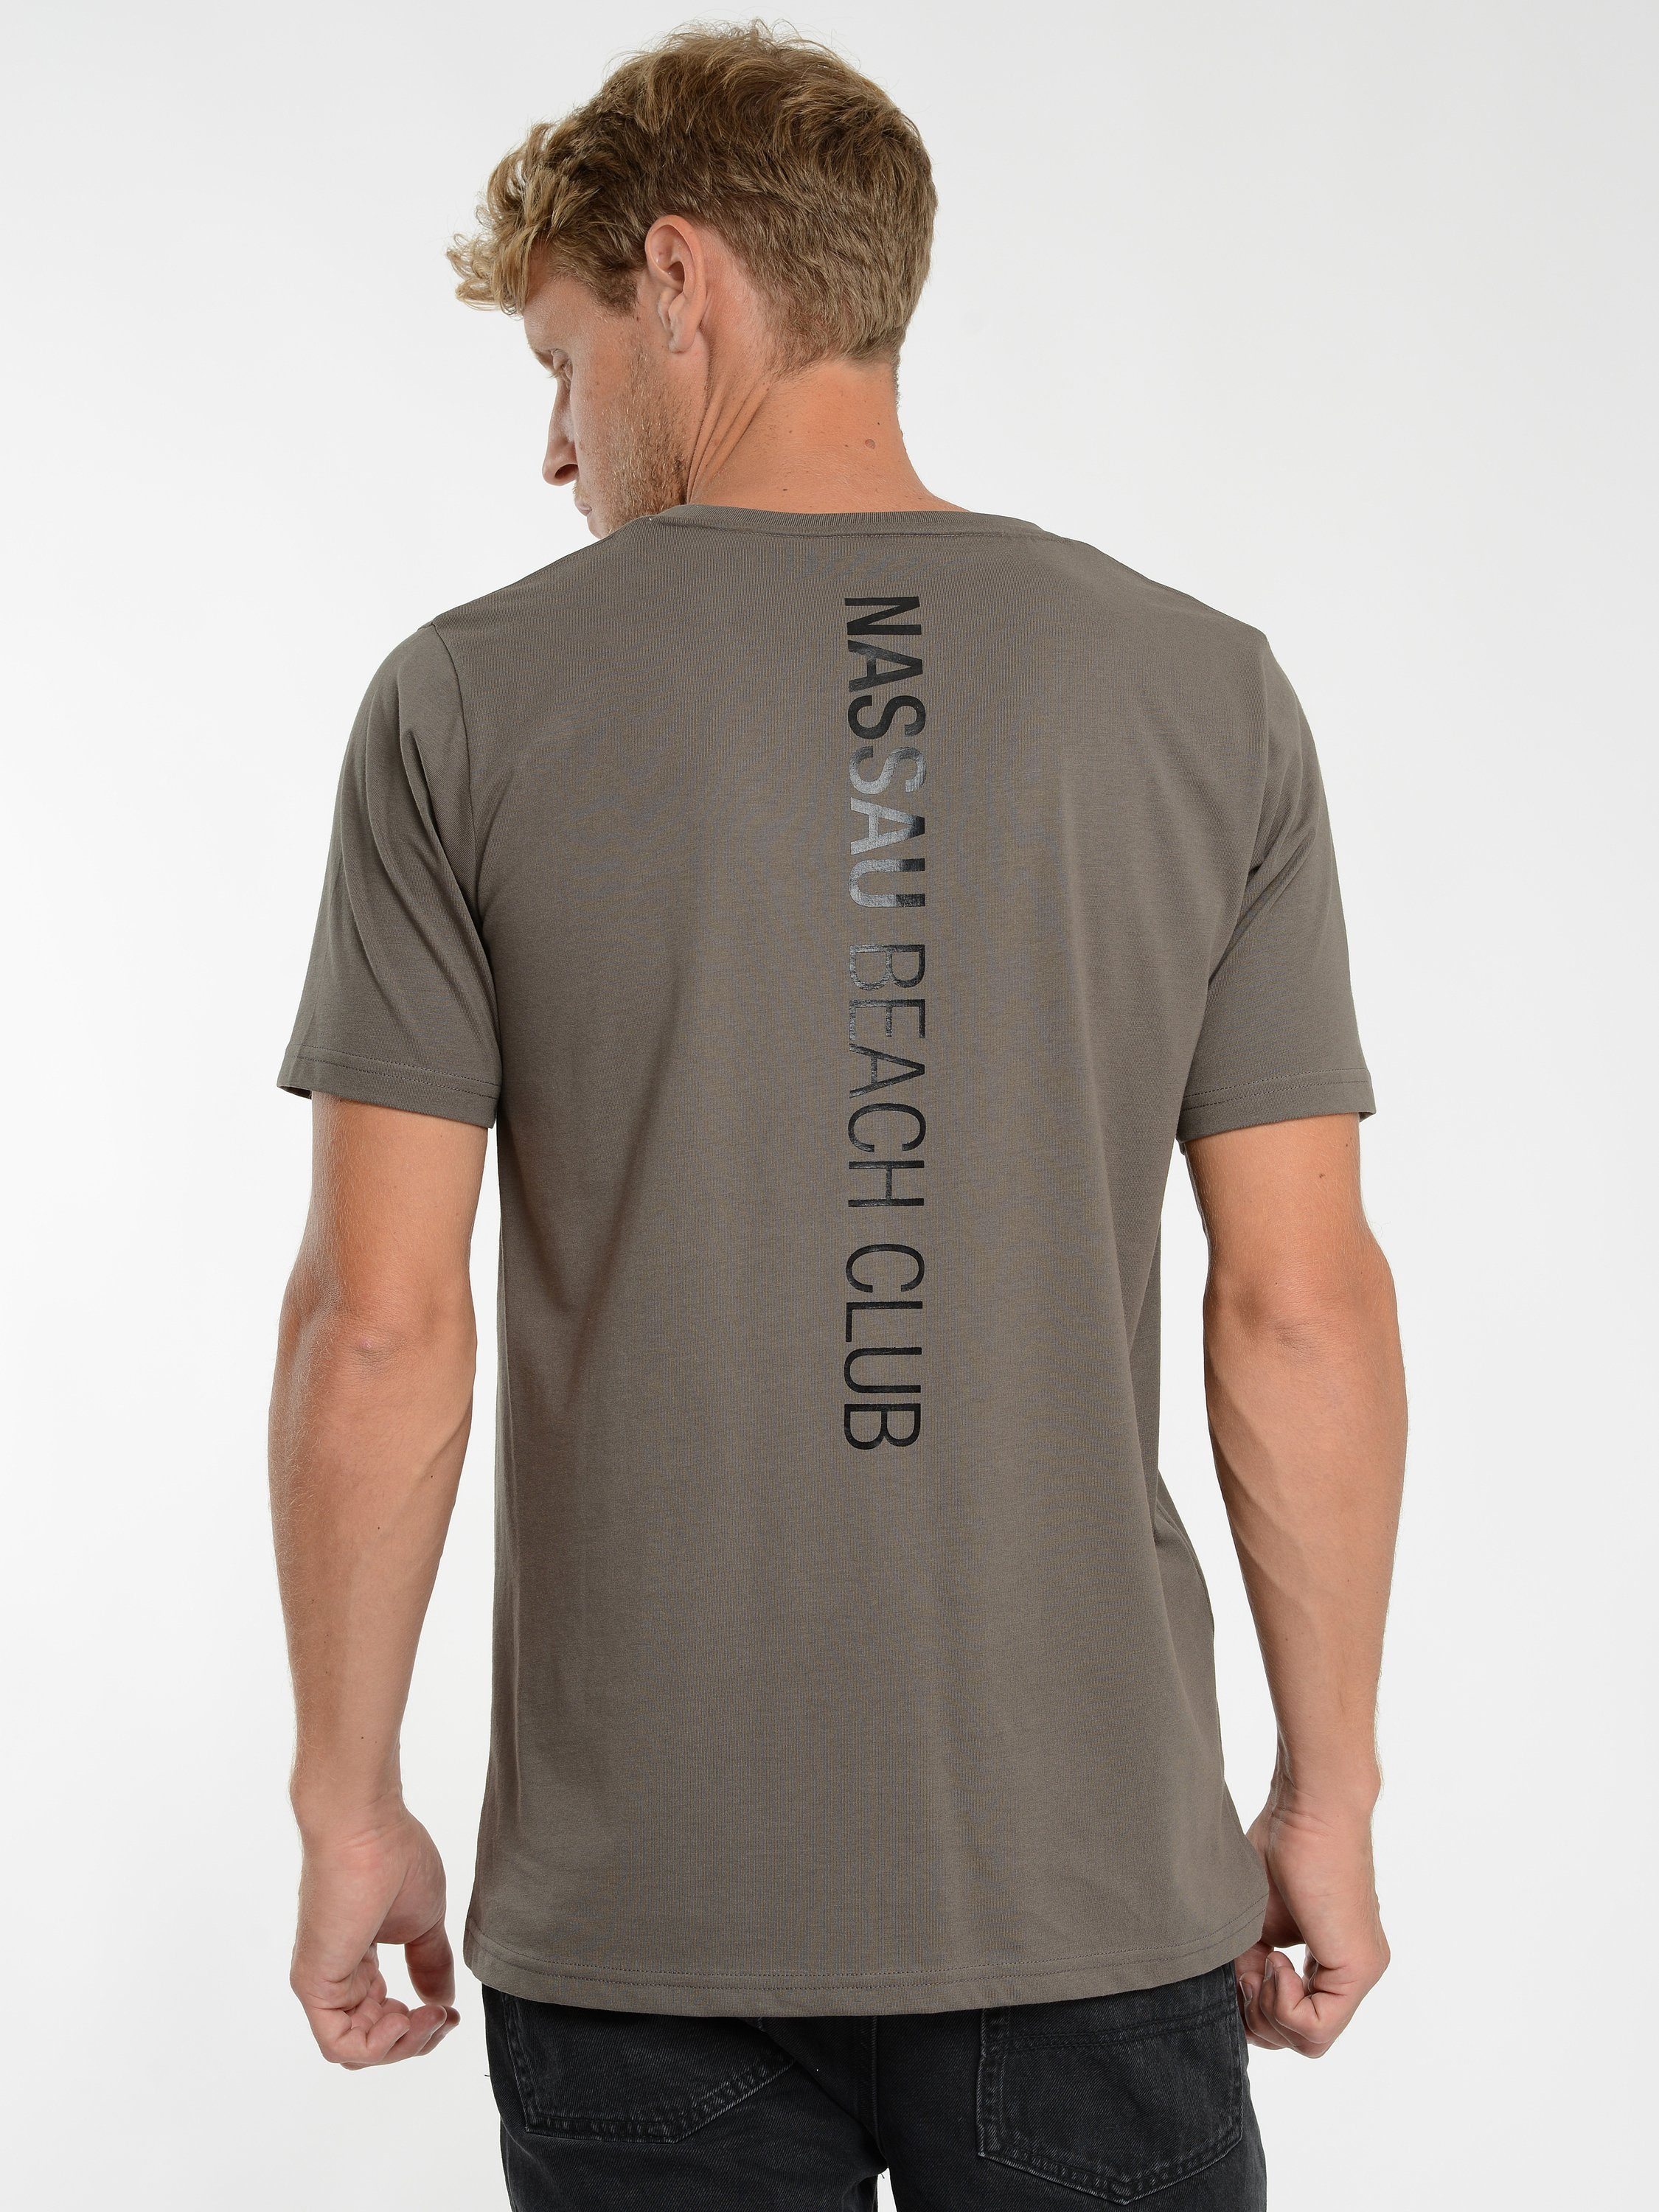 NASSAU BEACH T-Shirt NB22012